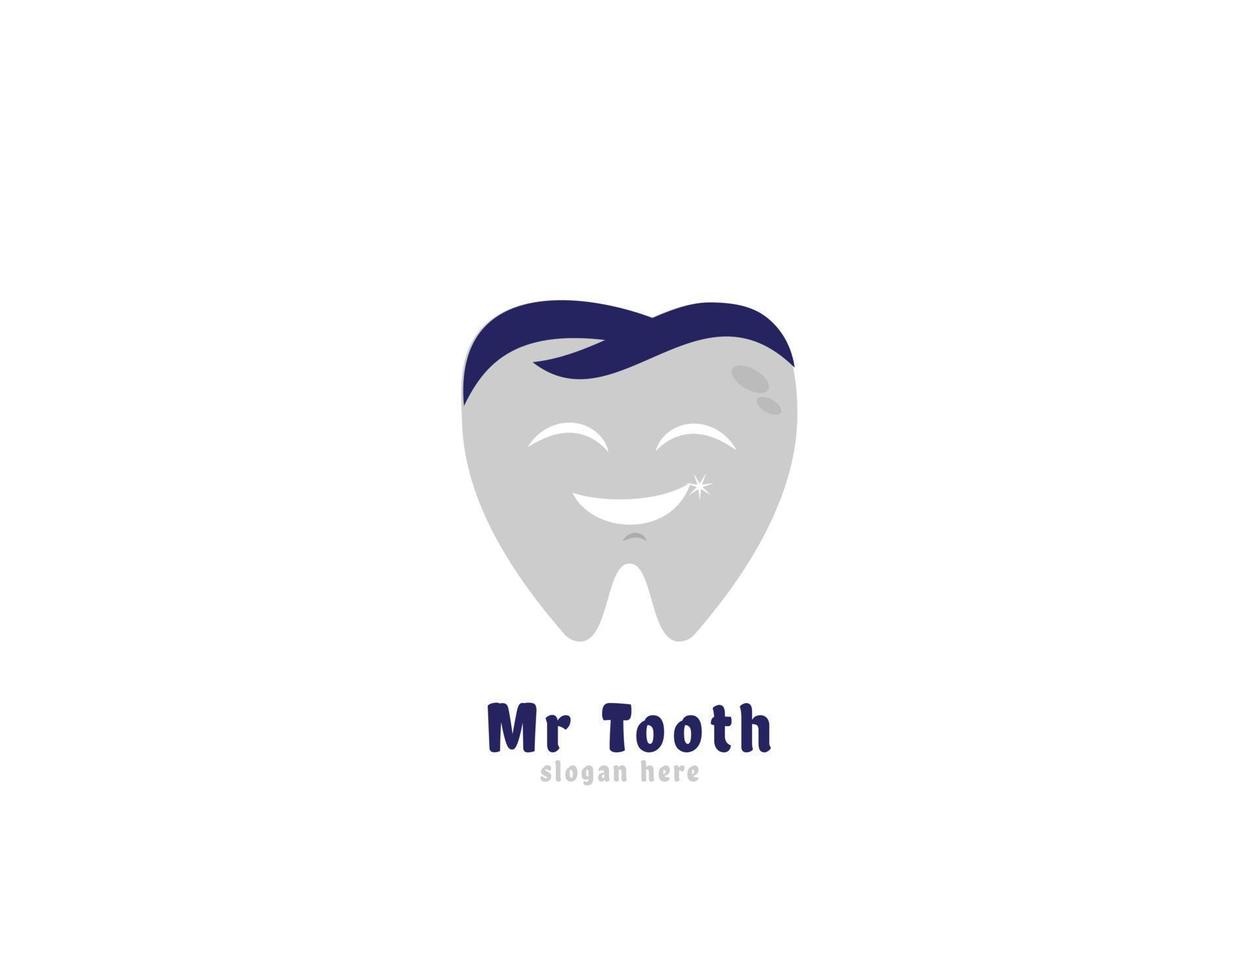 logo Mr tooth, dentist vector